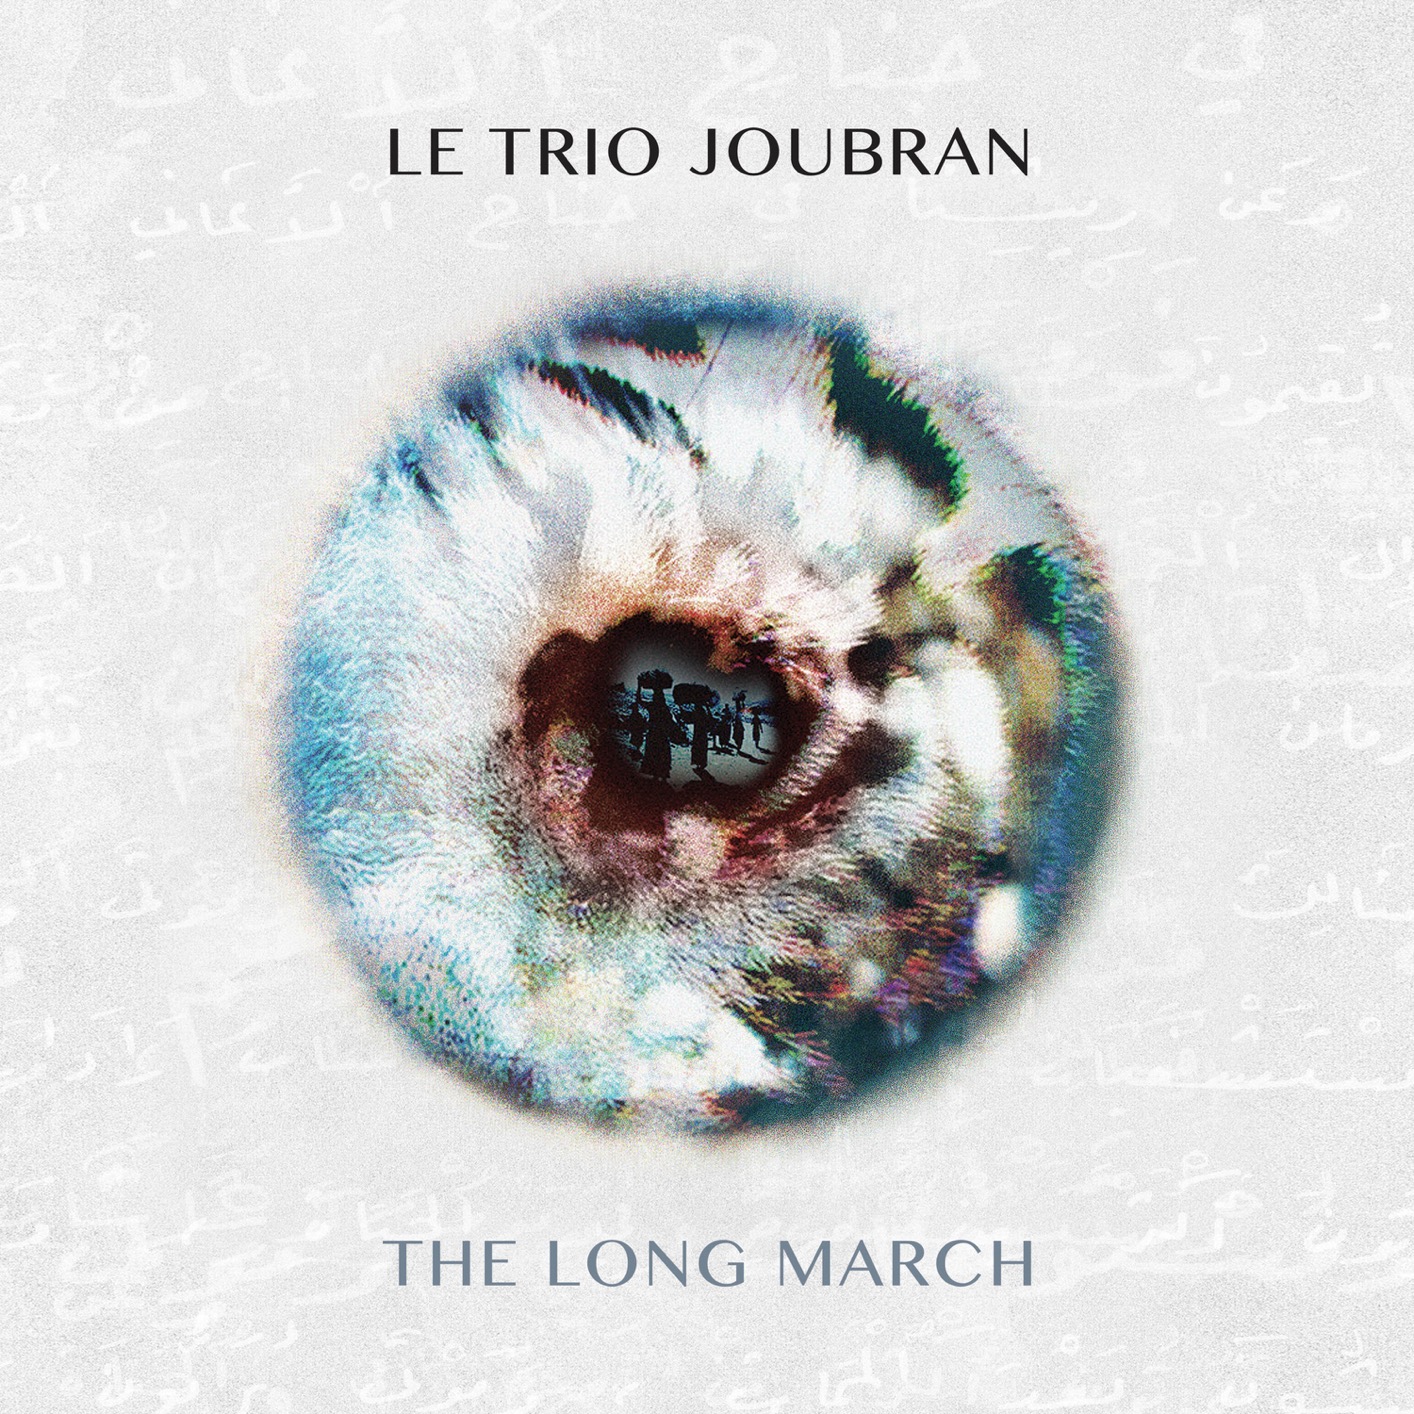 Le Trio Joubran - The Long March (2018) [FLAC 24bit/48kHz]